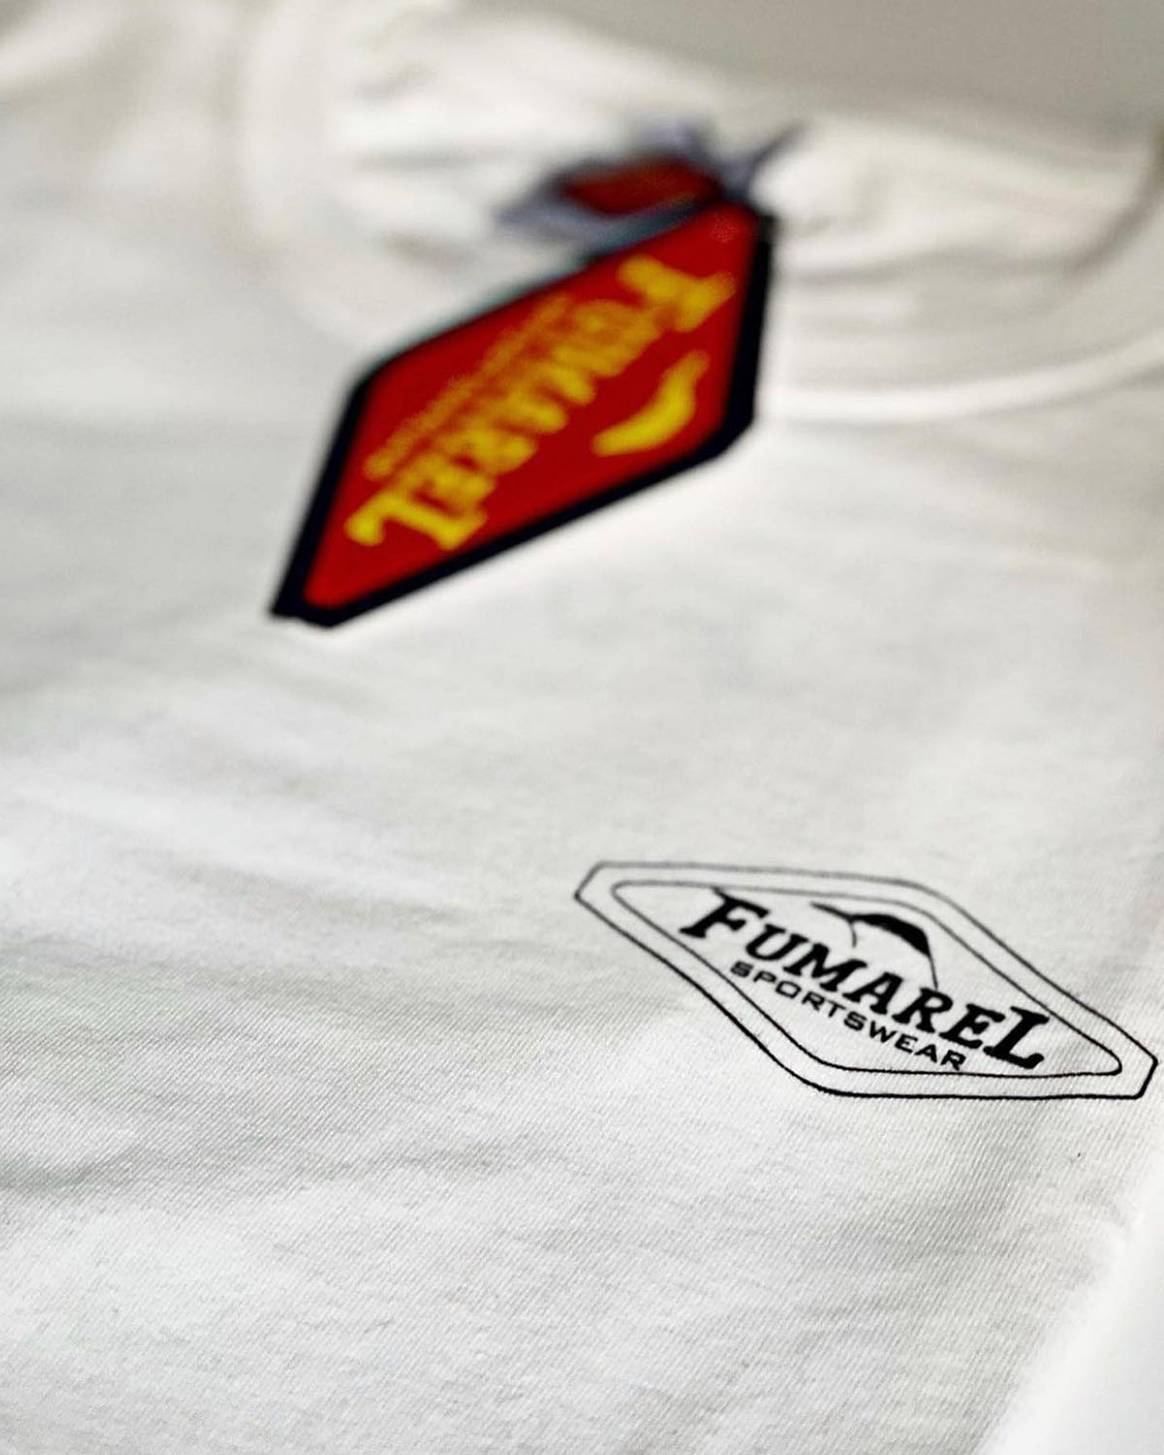 Photo Credits: Camiseta con el logotipo de Fumarel. Fotografía de cortesía.